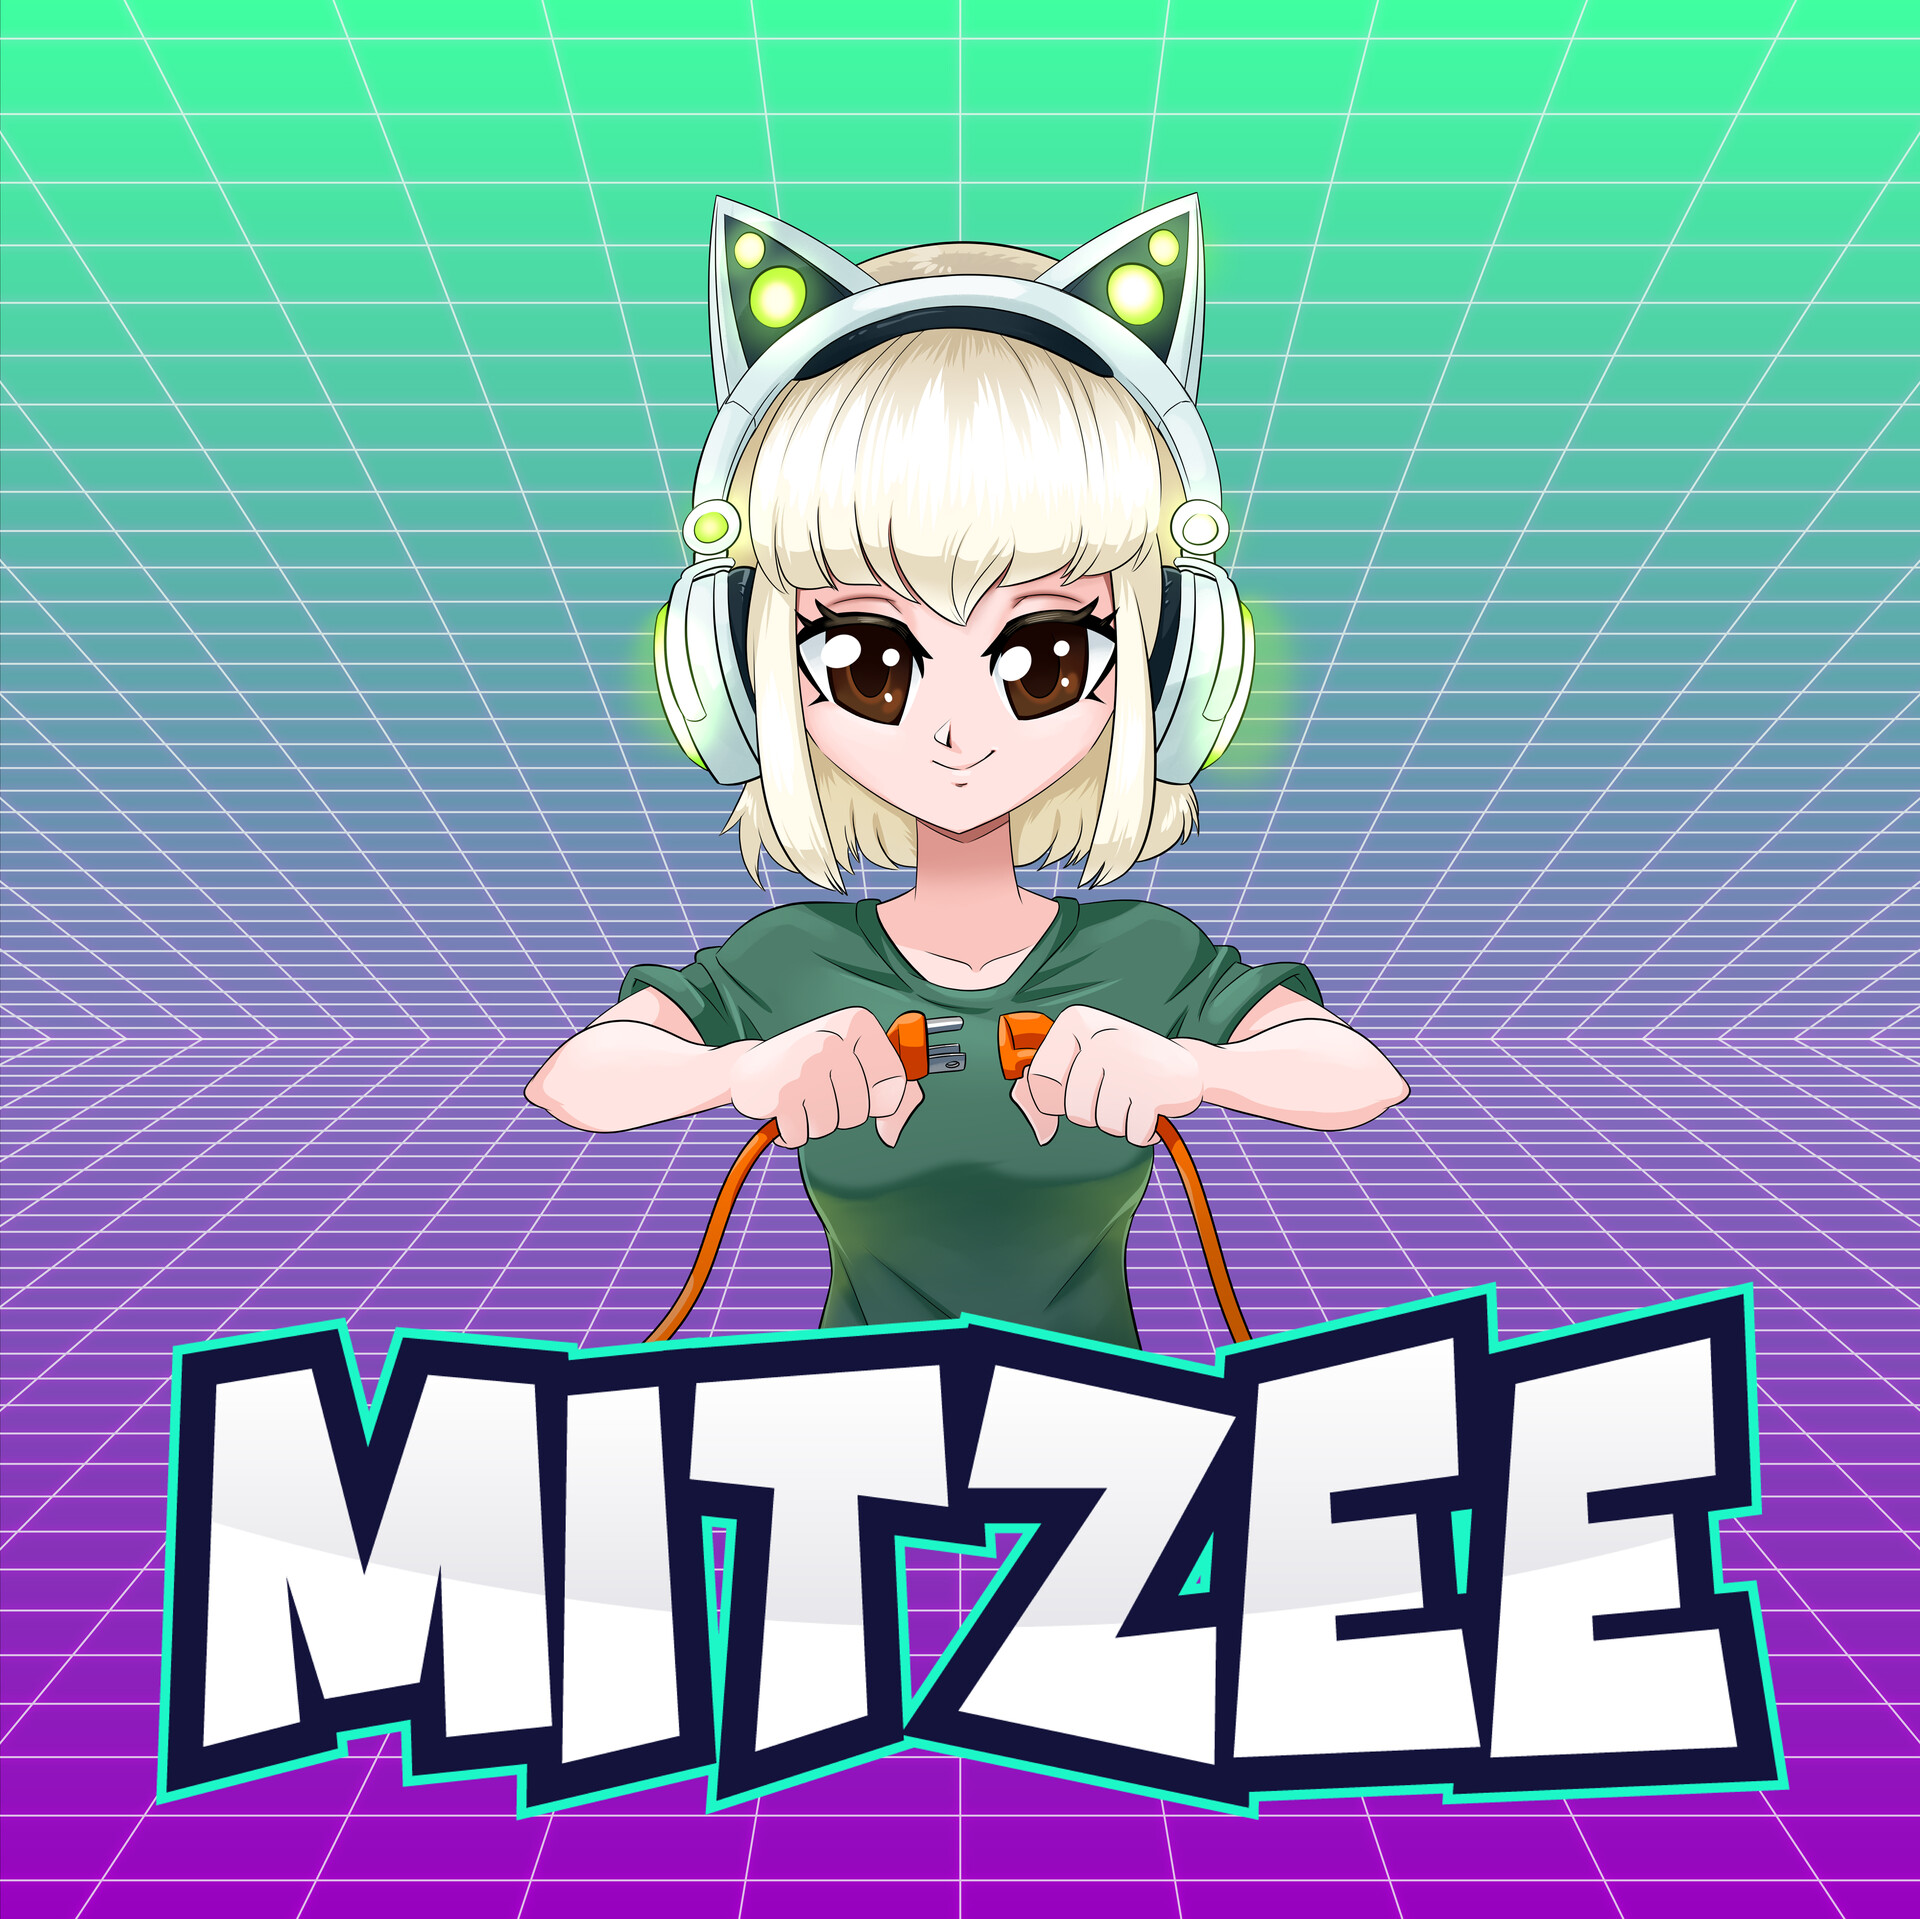 Mitzee